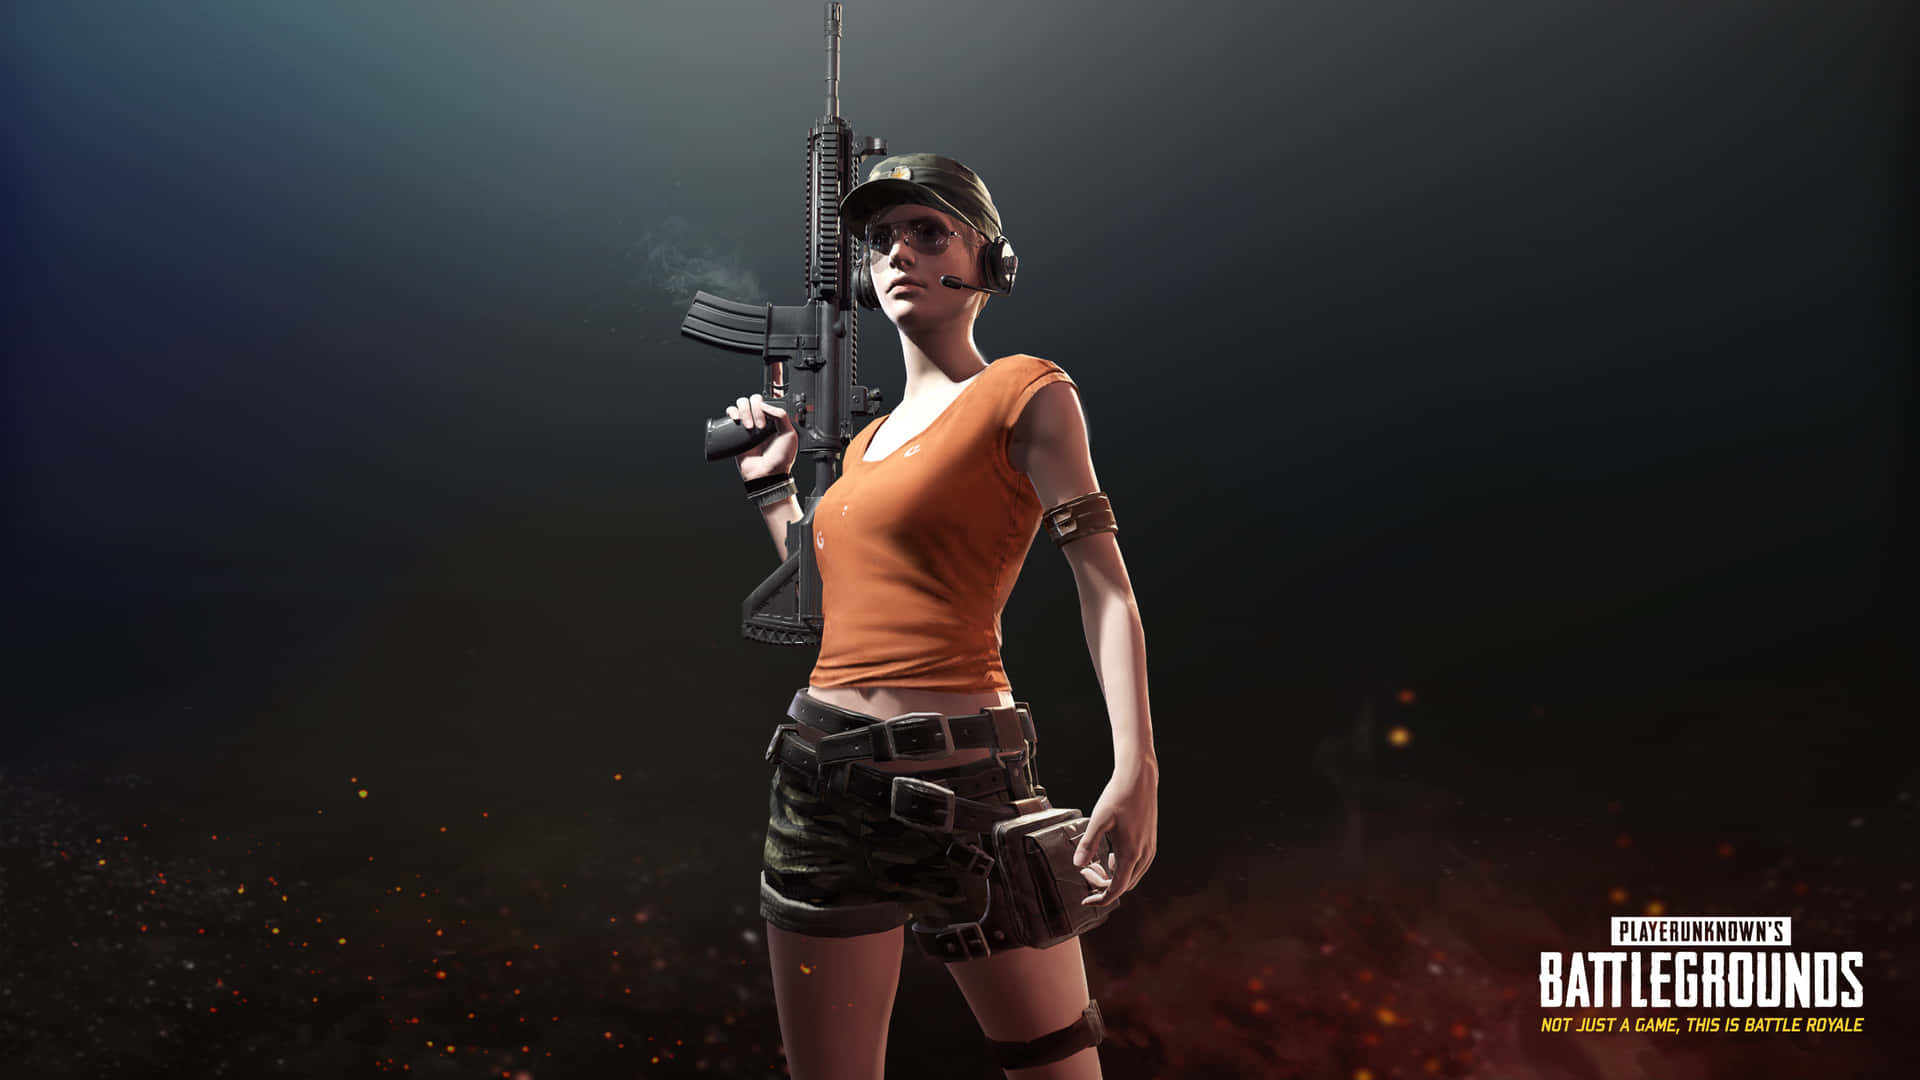 Bạn đã thử tải xuống Player Unknown Battlegrounds nhân vật nữ đang cầm súng chưa? Đây là một trong những phiên bản độc đáo và hấp dẫn nhất của trò chơi thế giới mở này. Sẽ có rất nhiều trải nghiệm vô cùng thú vị chờ đợi bạn trong game này. 